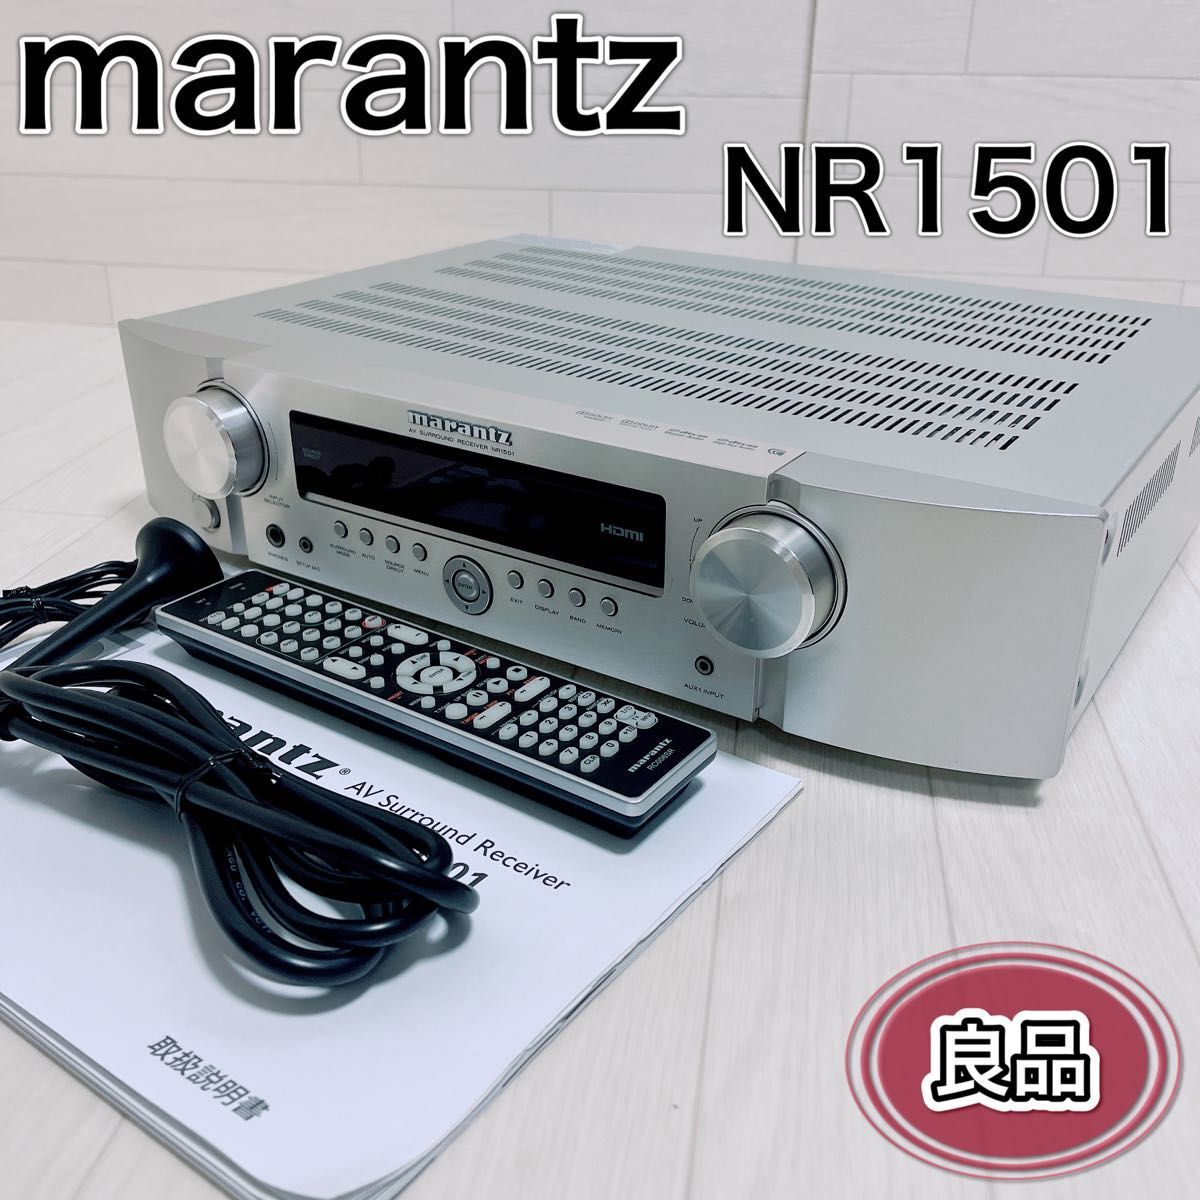 Marantz Marantz AV усилитель NR1501 серебряный с дистанционным пультом хорошая вещь 